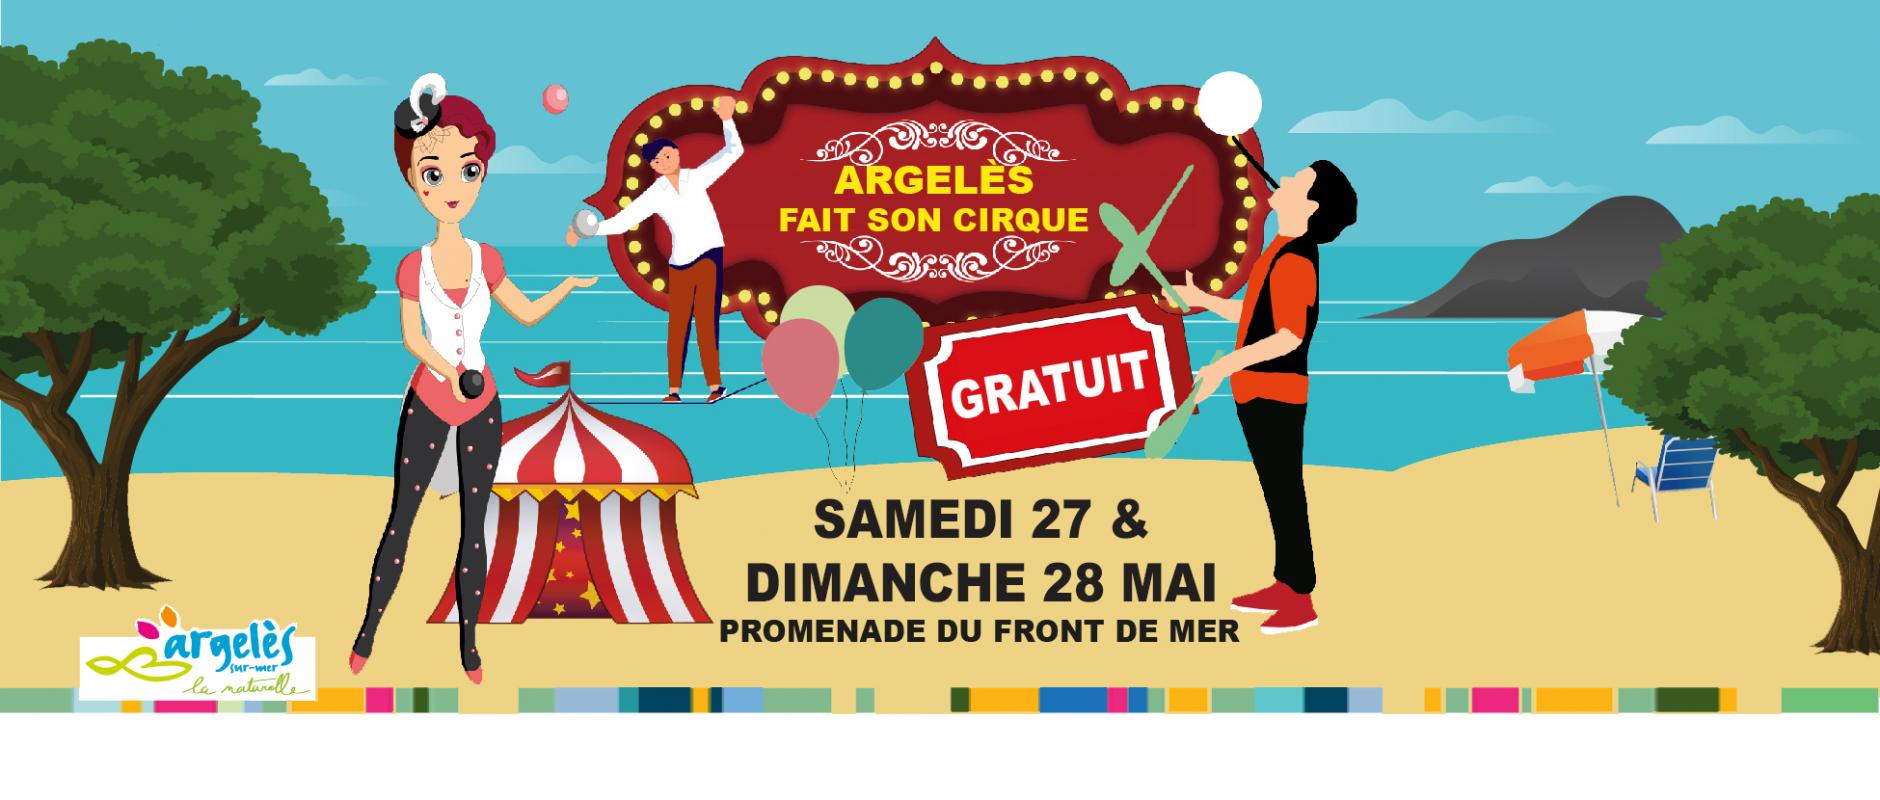 Argelès fait son cirque, spectacle, animations pour enfants, clow, cavalcade